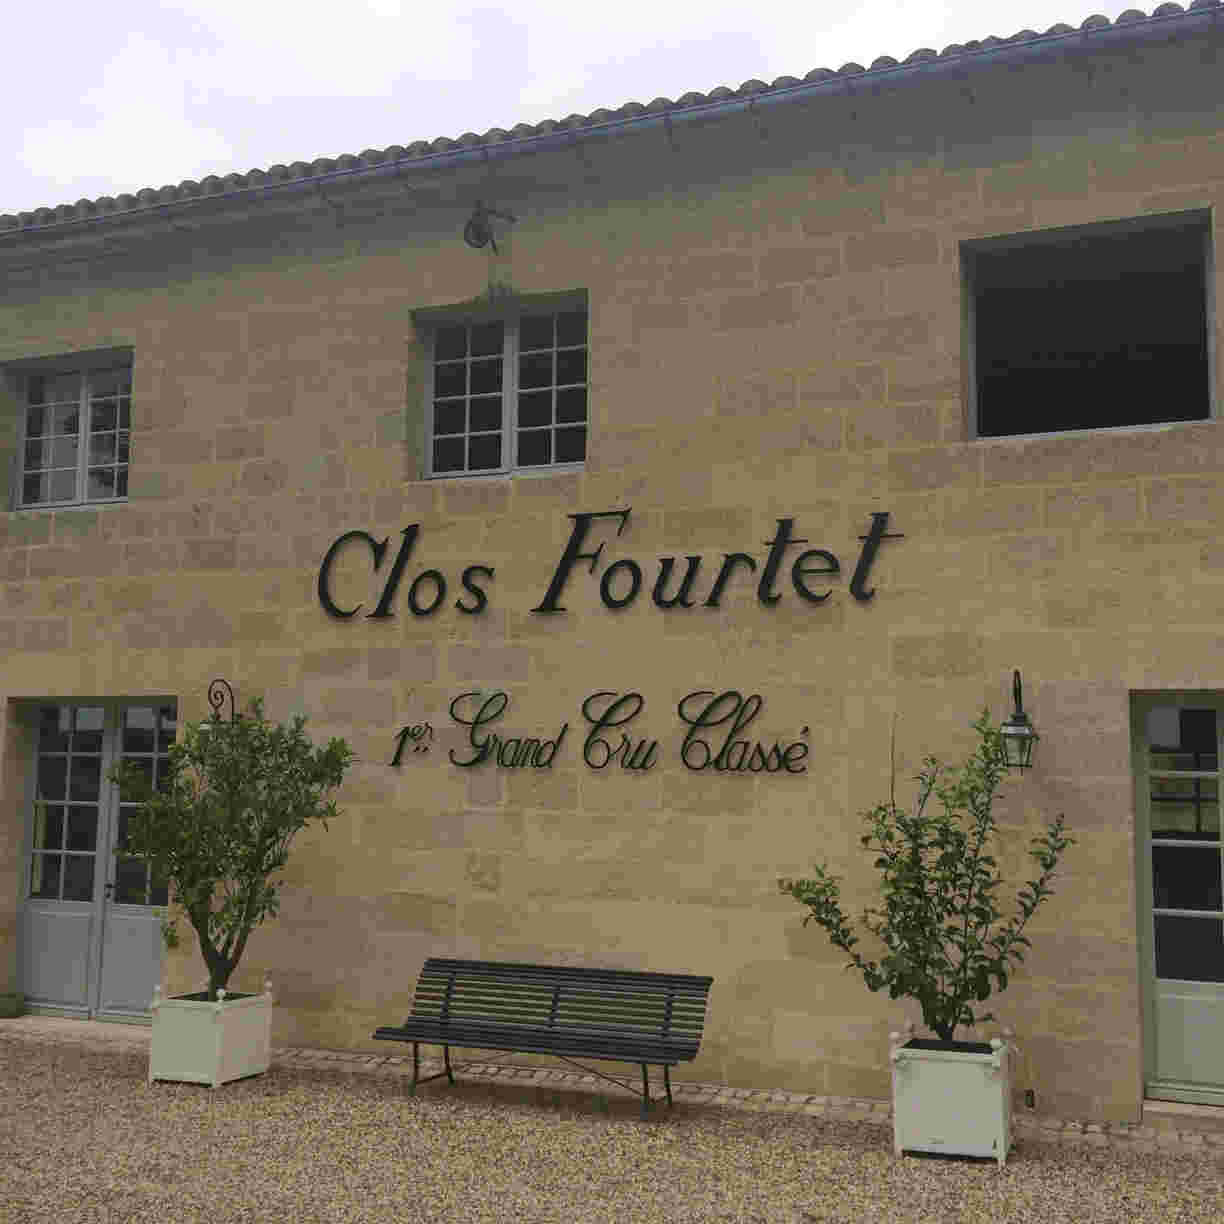 酒庄信息：富尔泰酒庄 Clos Fourtet